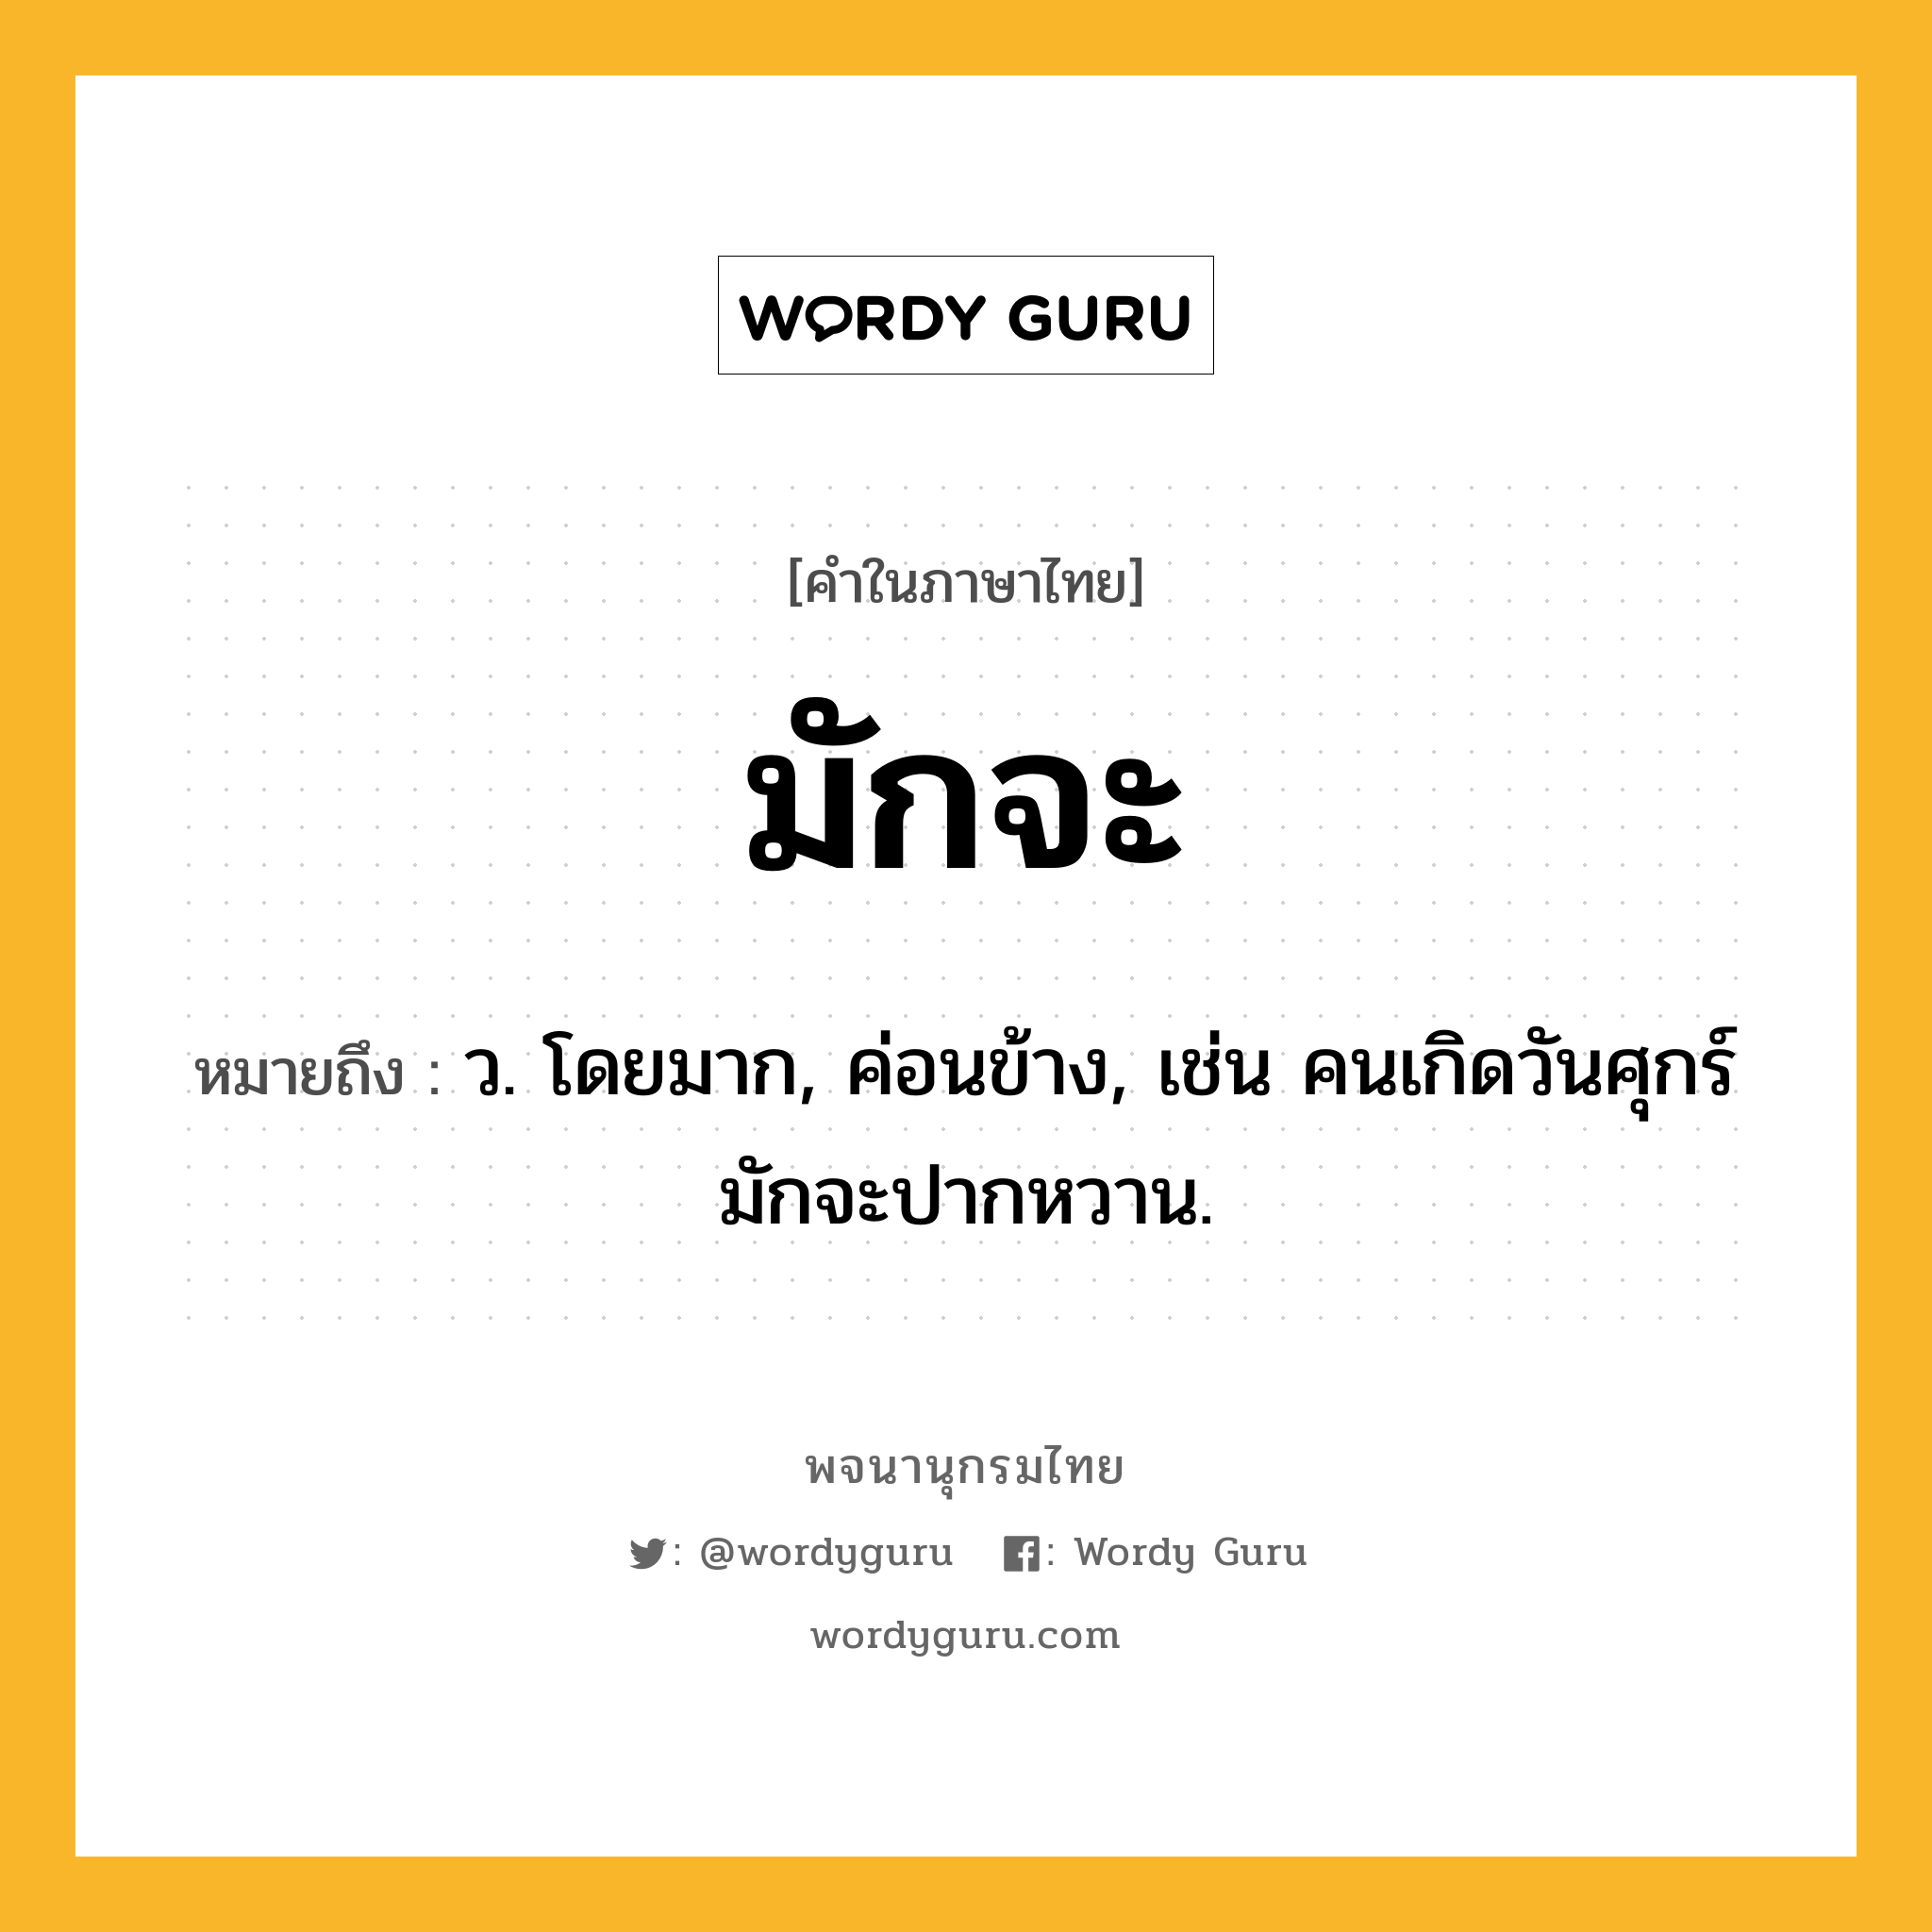 มักจะ ความหมาย หมายถึงอะไร?, คำในภาษาไทย มักจะ หมายถึง ว. โดยมาก, ค่อนข้าง, เช่น คนเกิดวันศุกร์มักจะปากหวาน.